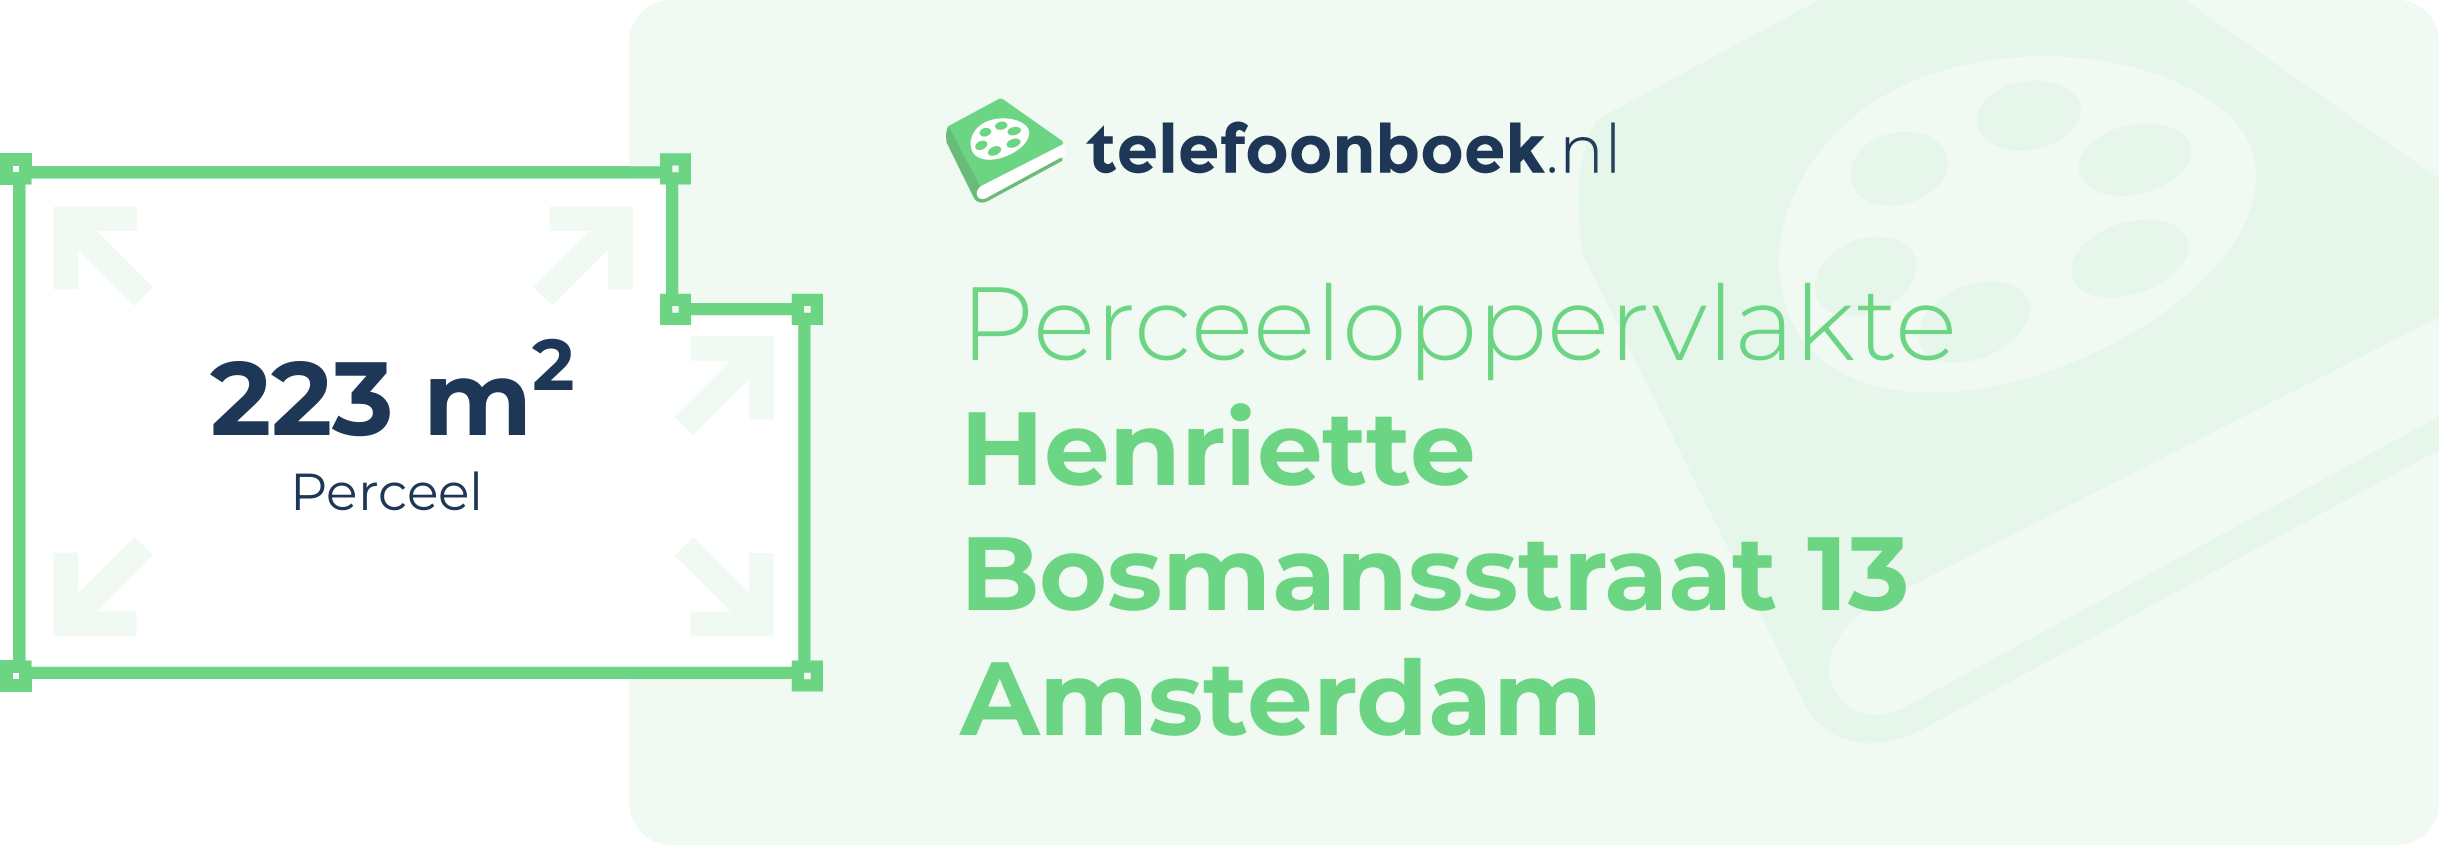 Perceeloppervlakte Henriette Bosmansstraat 13 Amsterdam